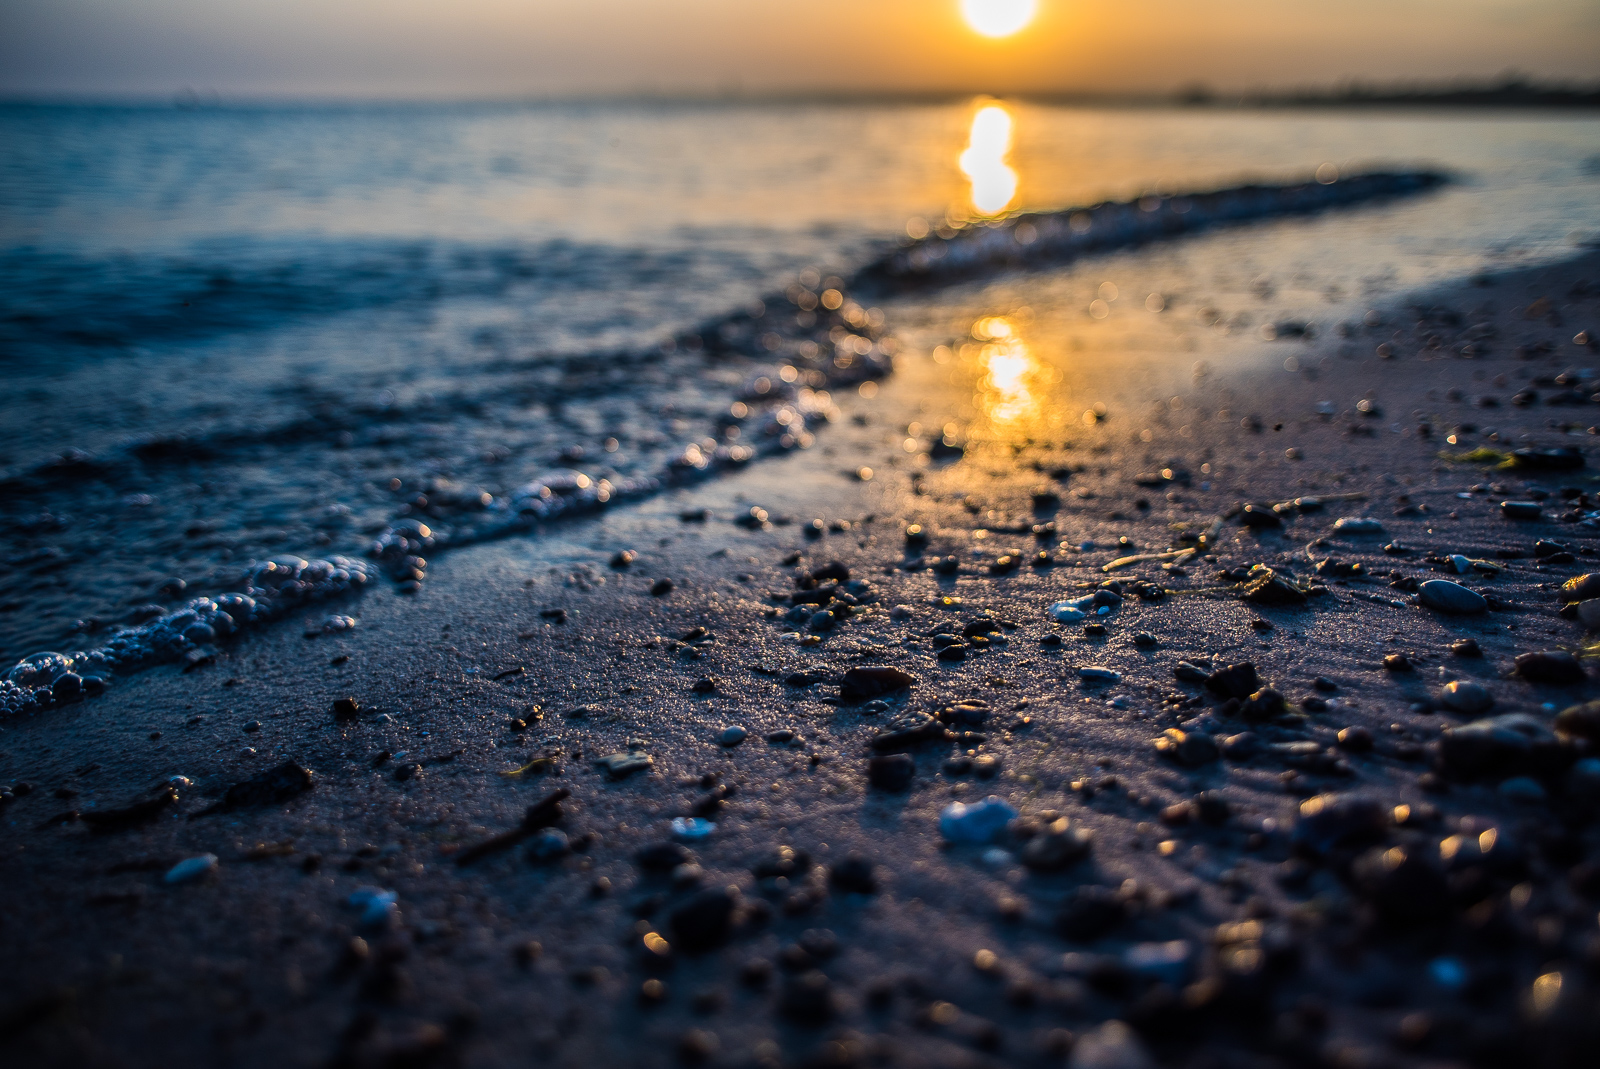 SonnenUntergang am Meer, schräg verlaufender BrandungsSaum und Schärfe auf den kleinen Steinen im VorderGrund